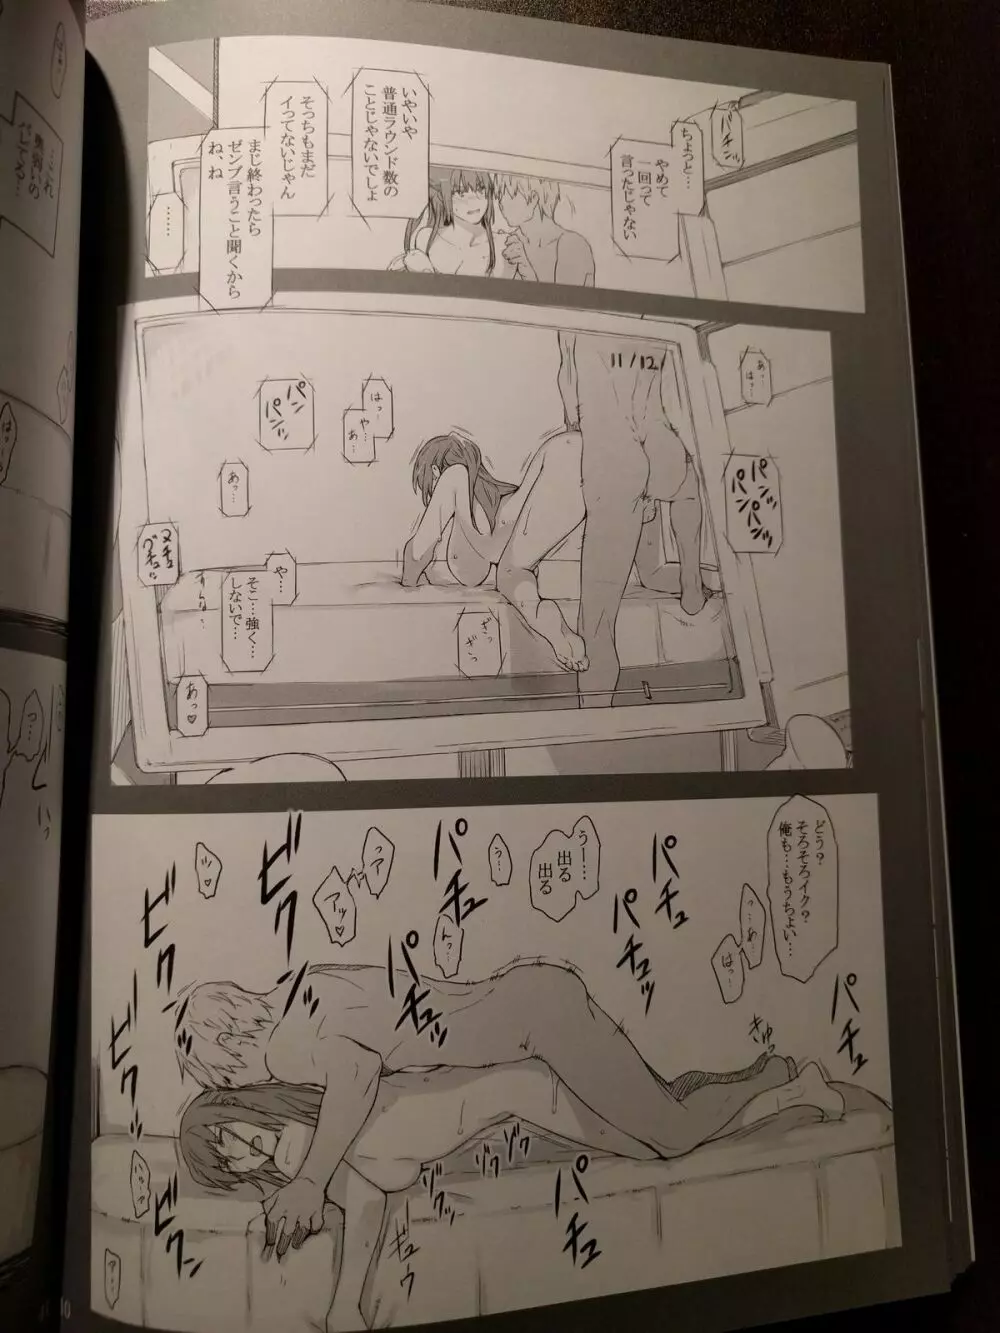 橘さん家ノ男性事情 小説版挿絵+オマケの本 page 27 onward - page14